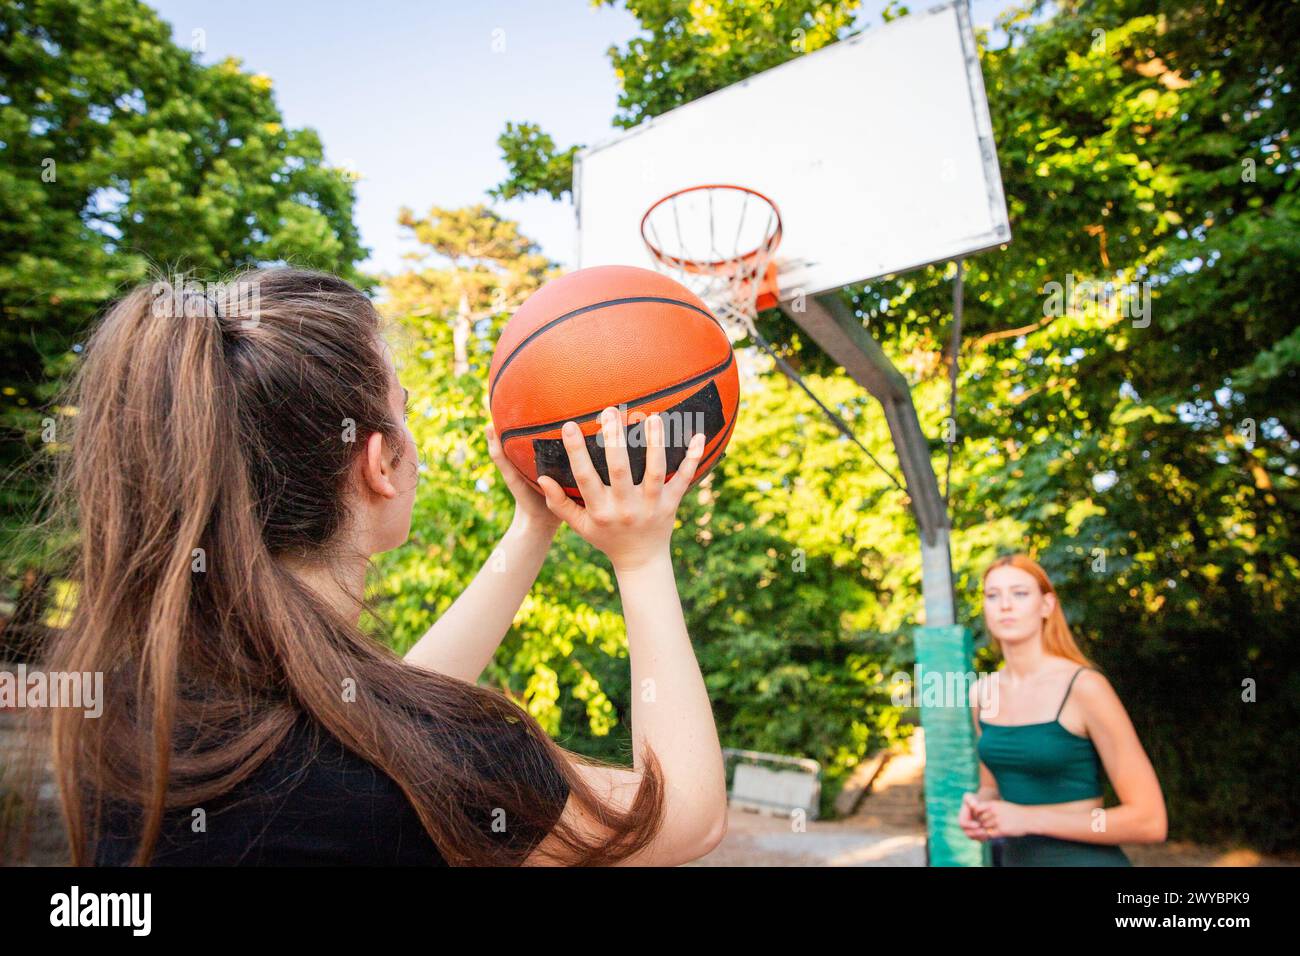 Una ragazza sta tenendo in mano una pallacanestro e sta sparando durante una partita. Foto Stock